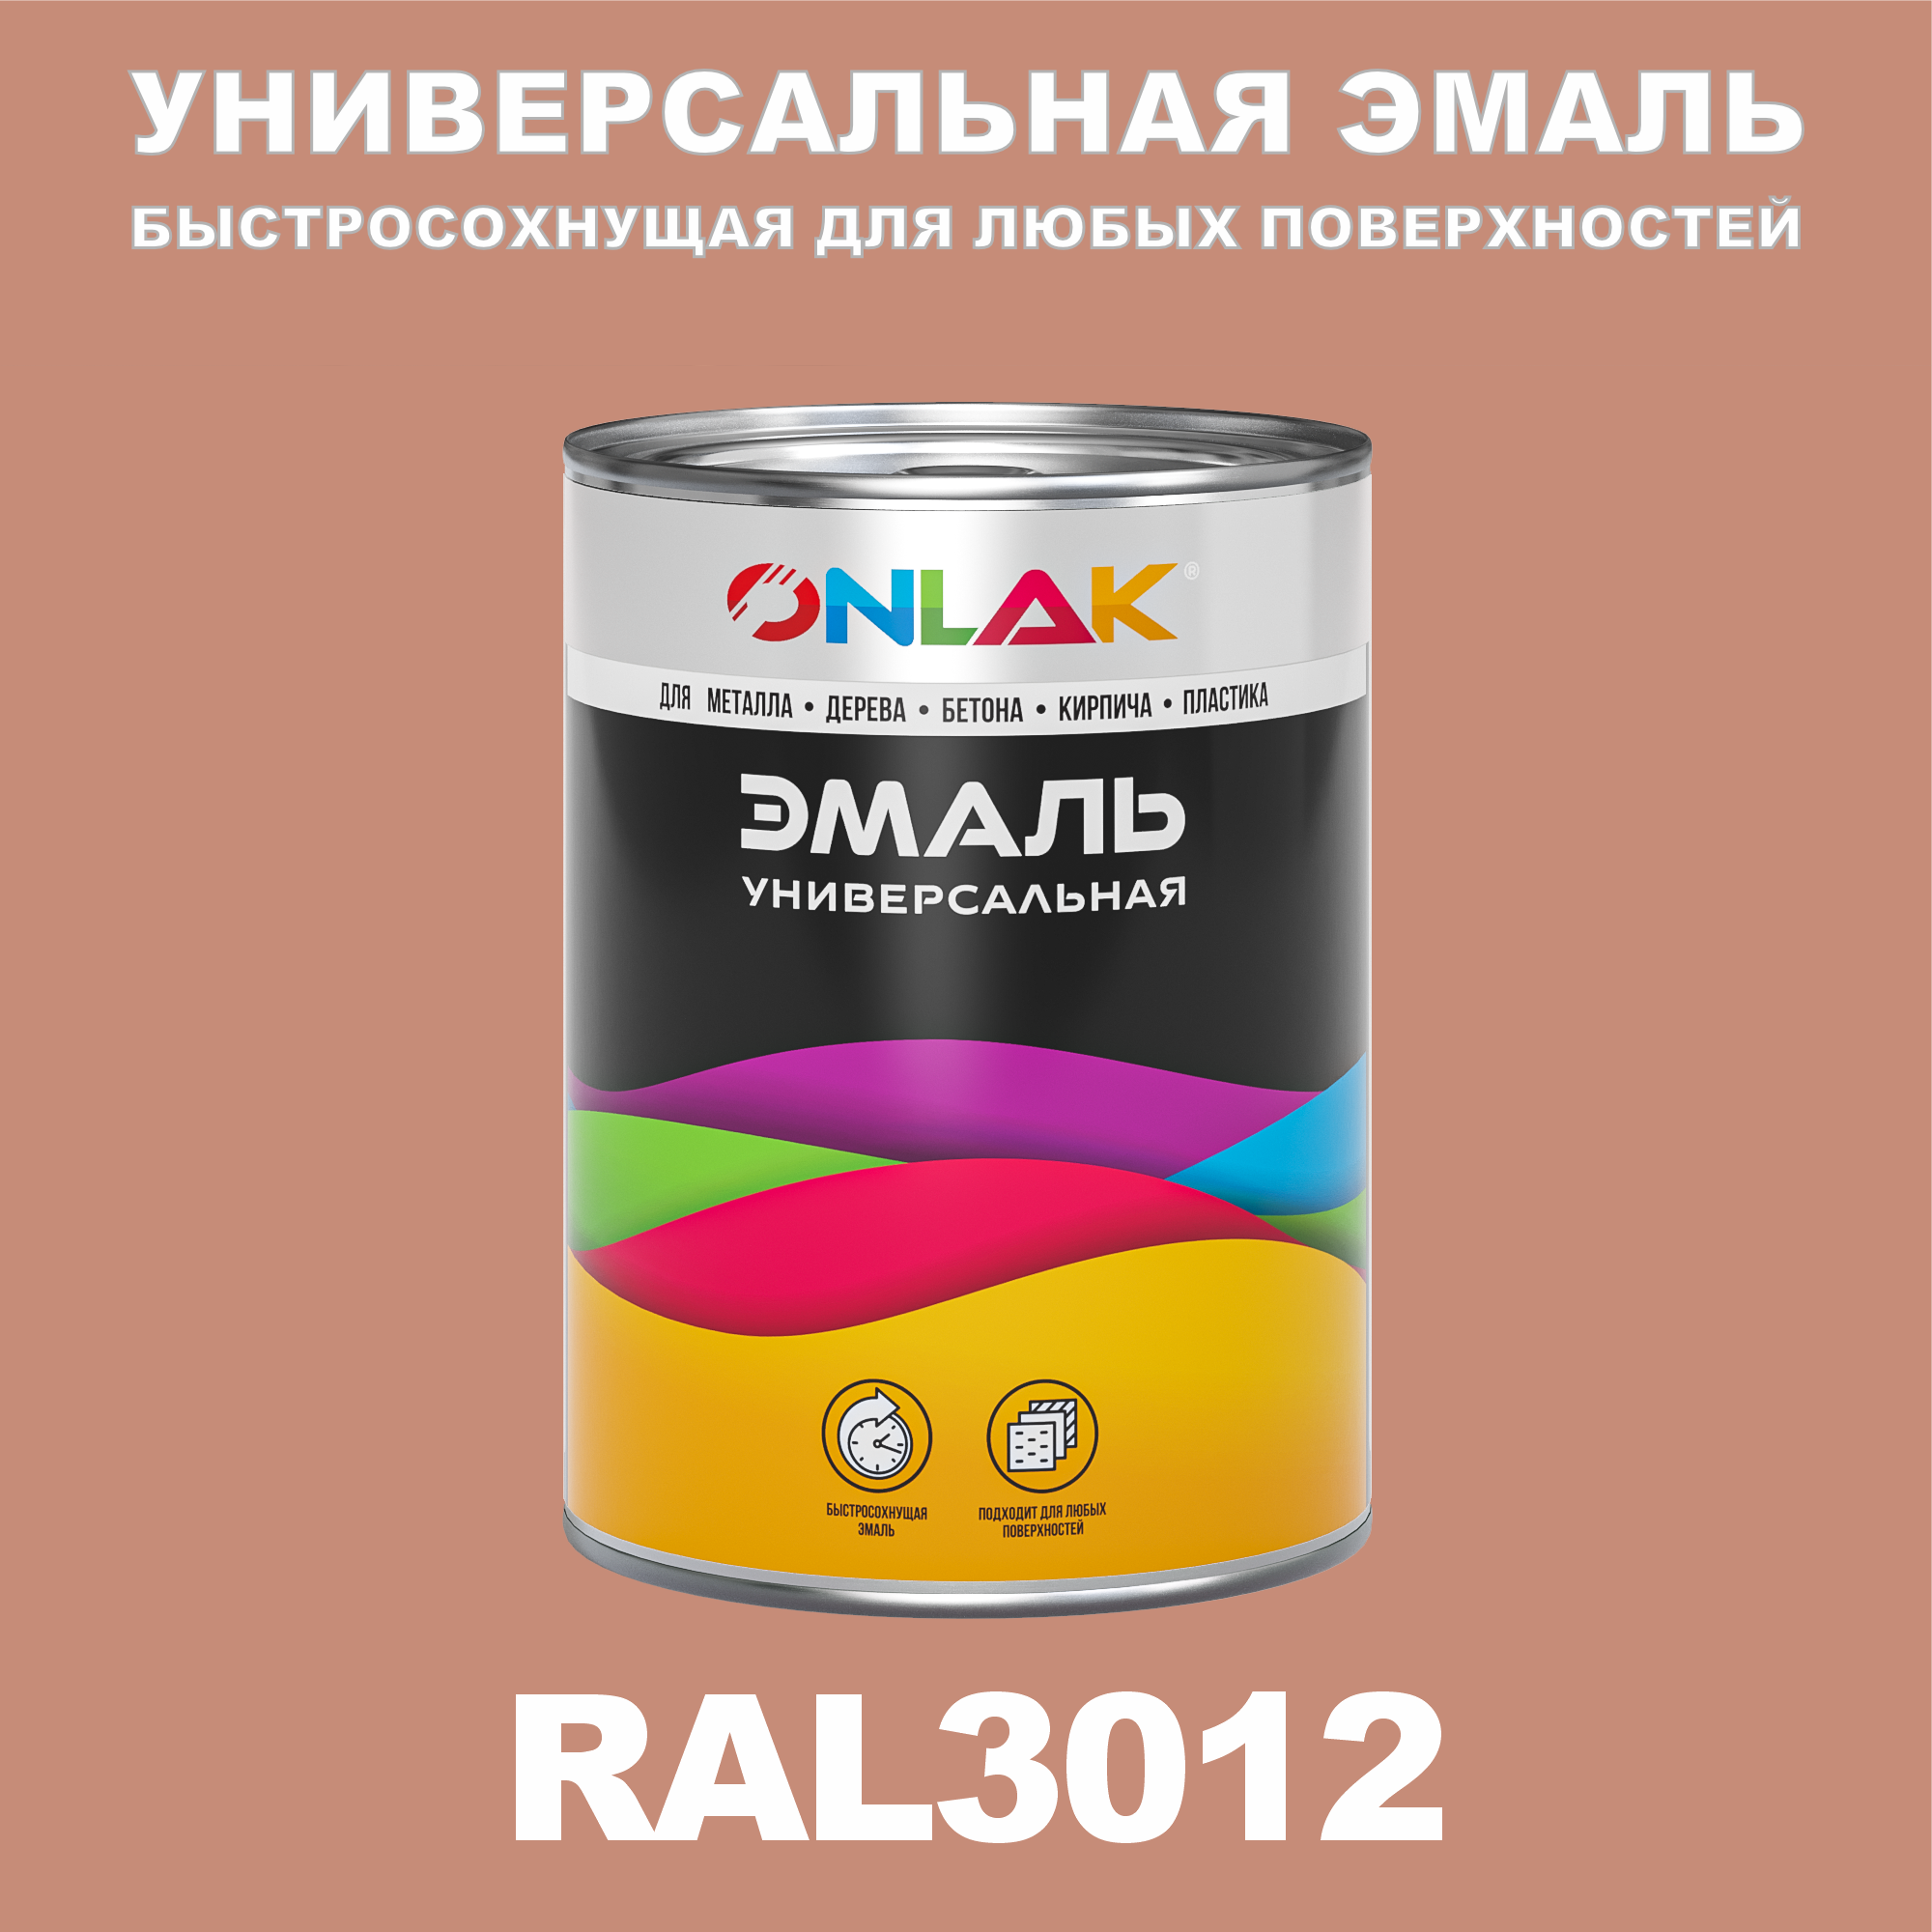 Эмаль ONLAK Универсальная RAL3012 по металлу по ржавчине для дерева бетона пластика напиток сокосодержащий santal красный сицилийский апельсин 1 литр